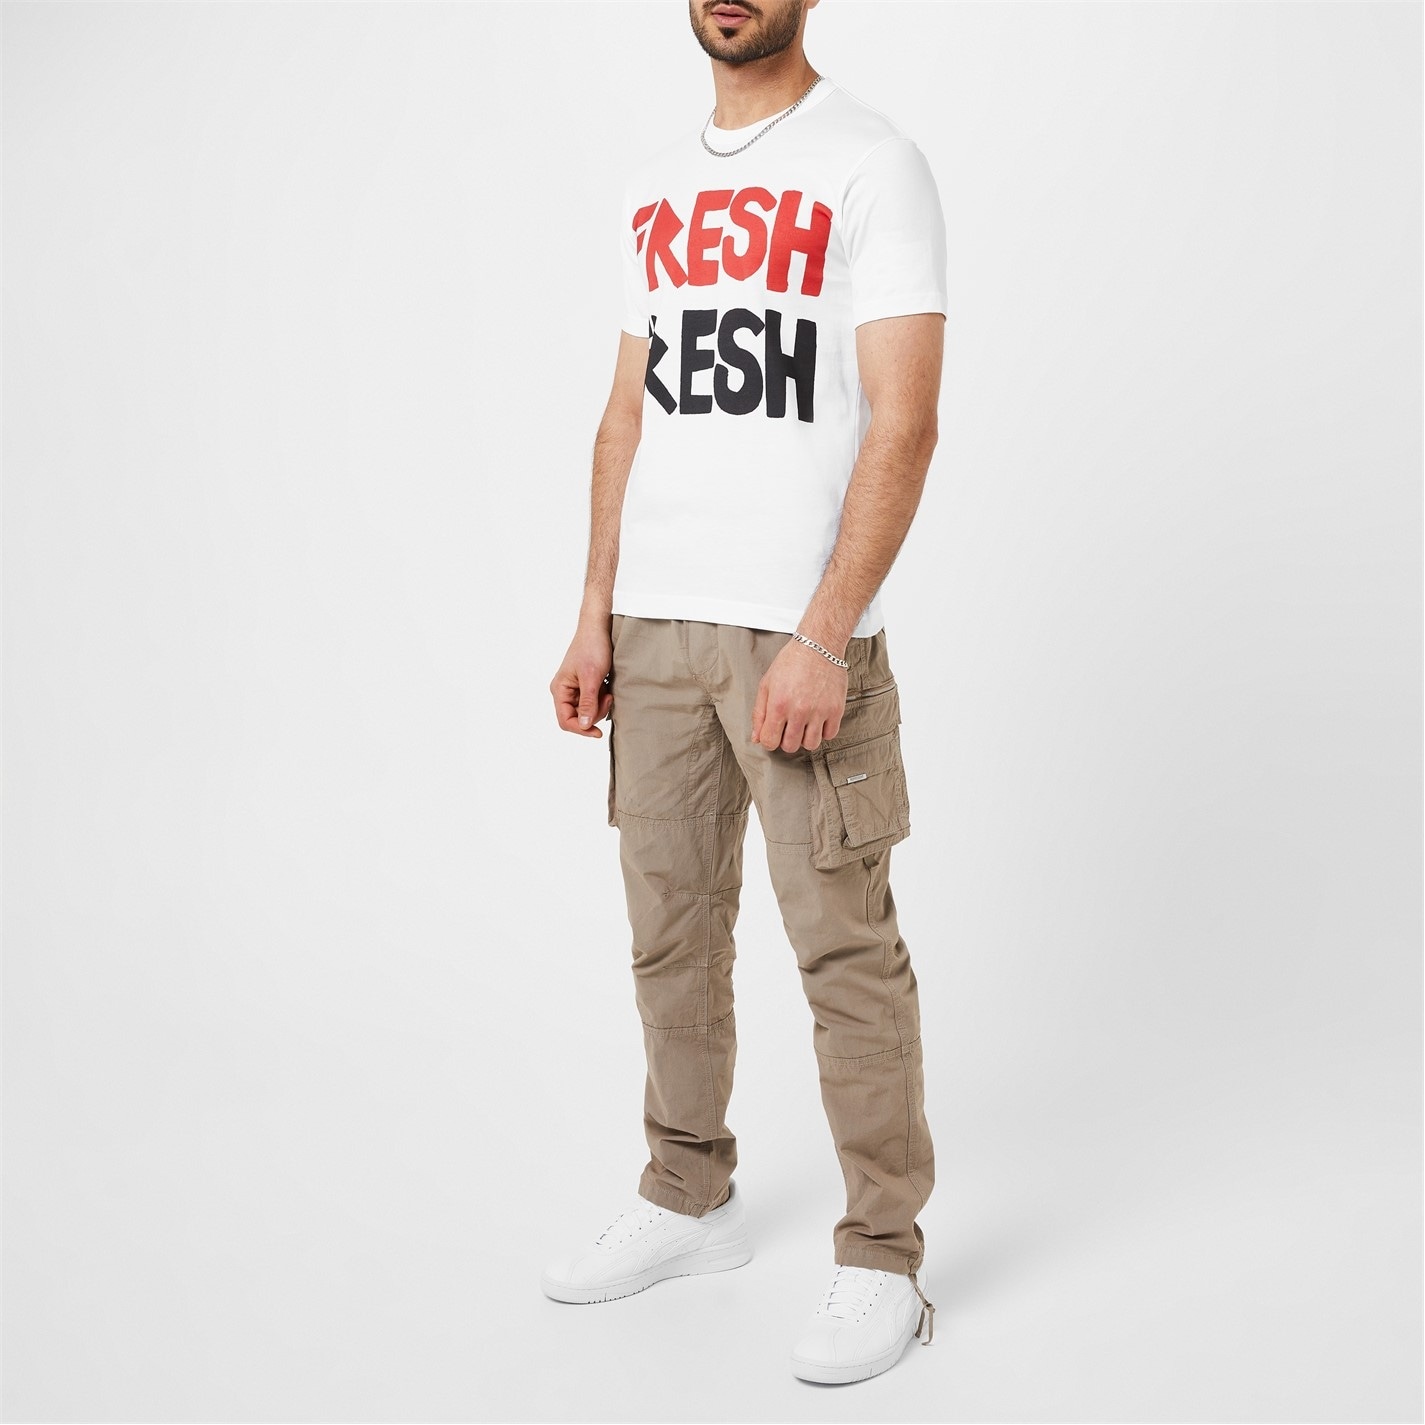 'Fresh Fresh' Print T-Shirt - 2